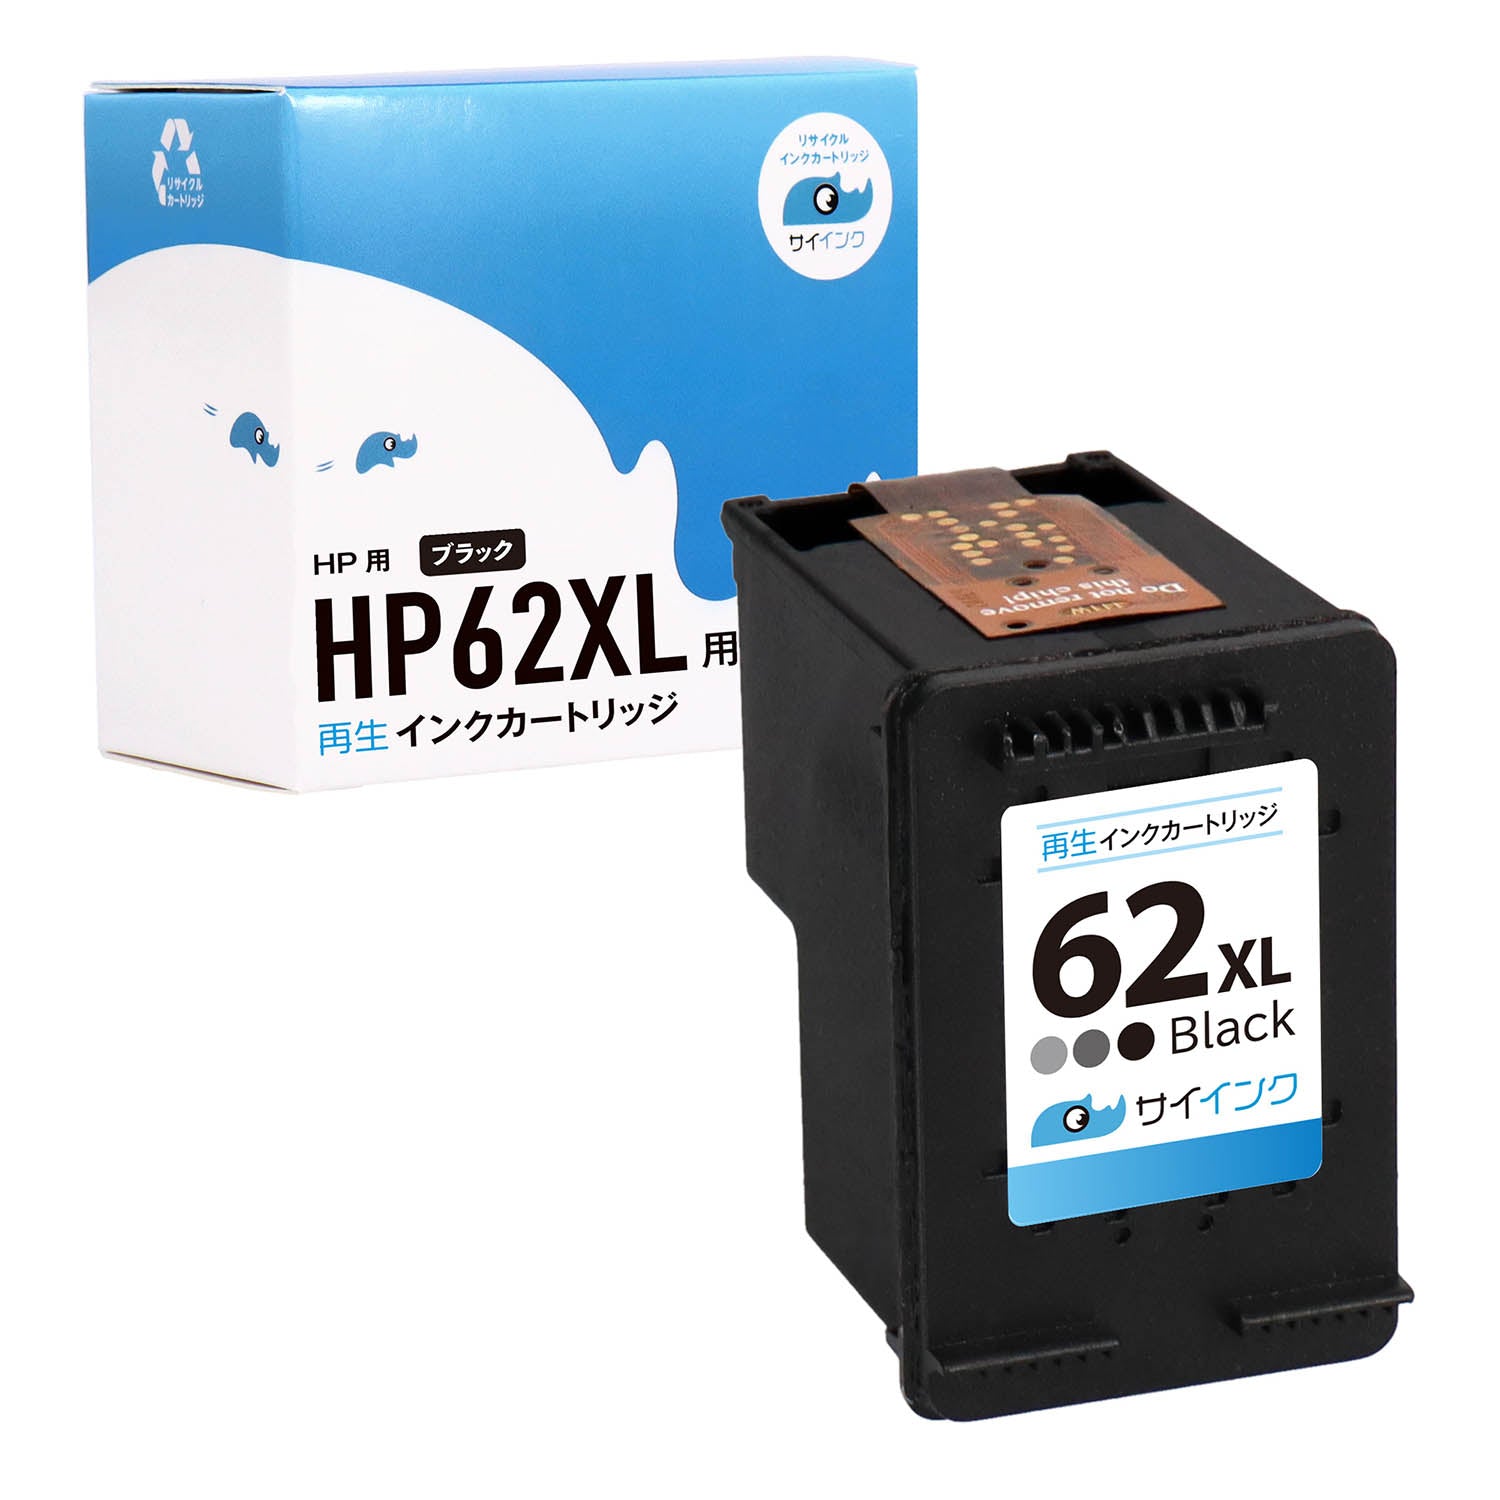 HP用 HP 62XL リサイクルインク ブラック 増量版